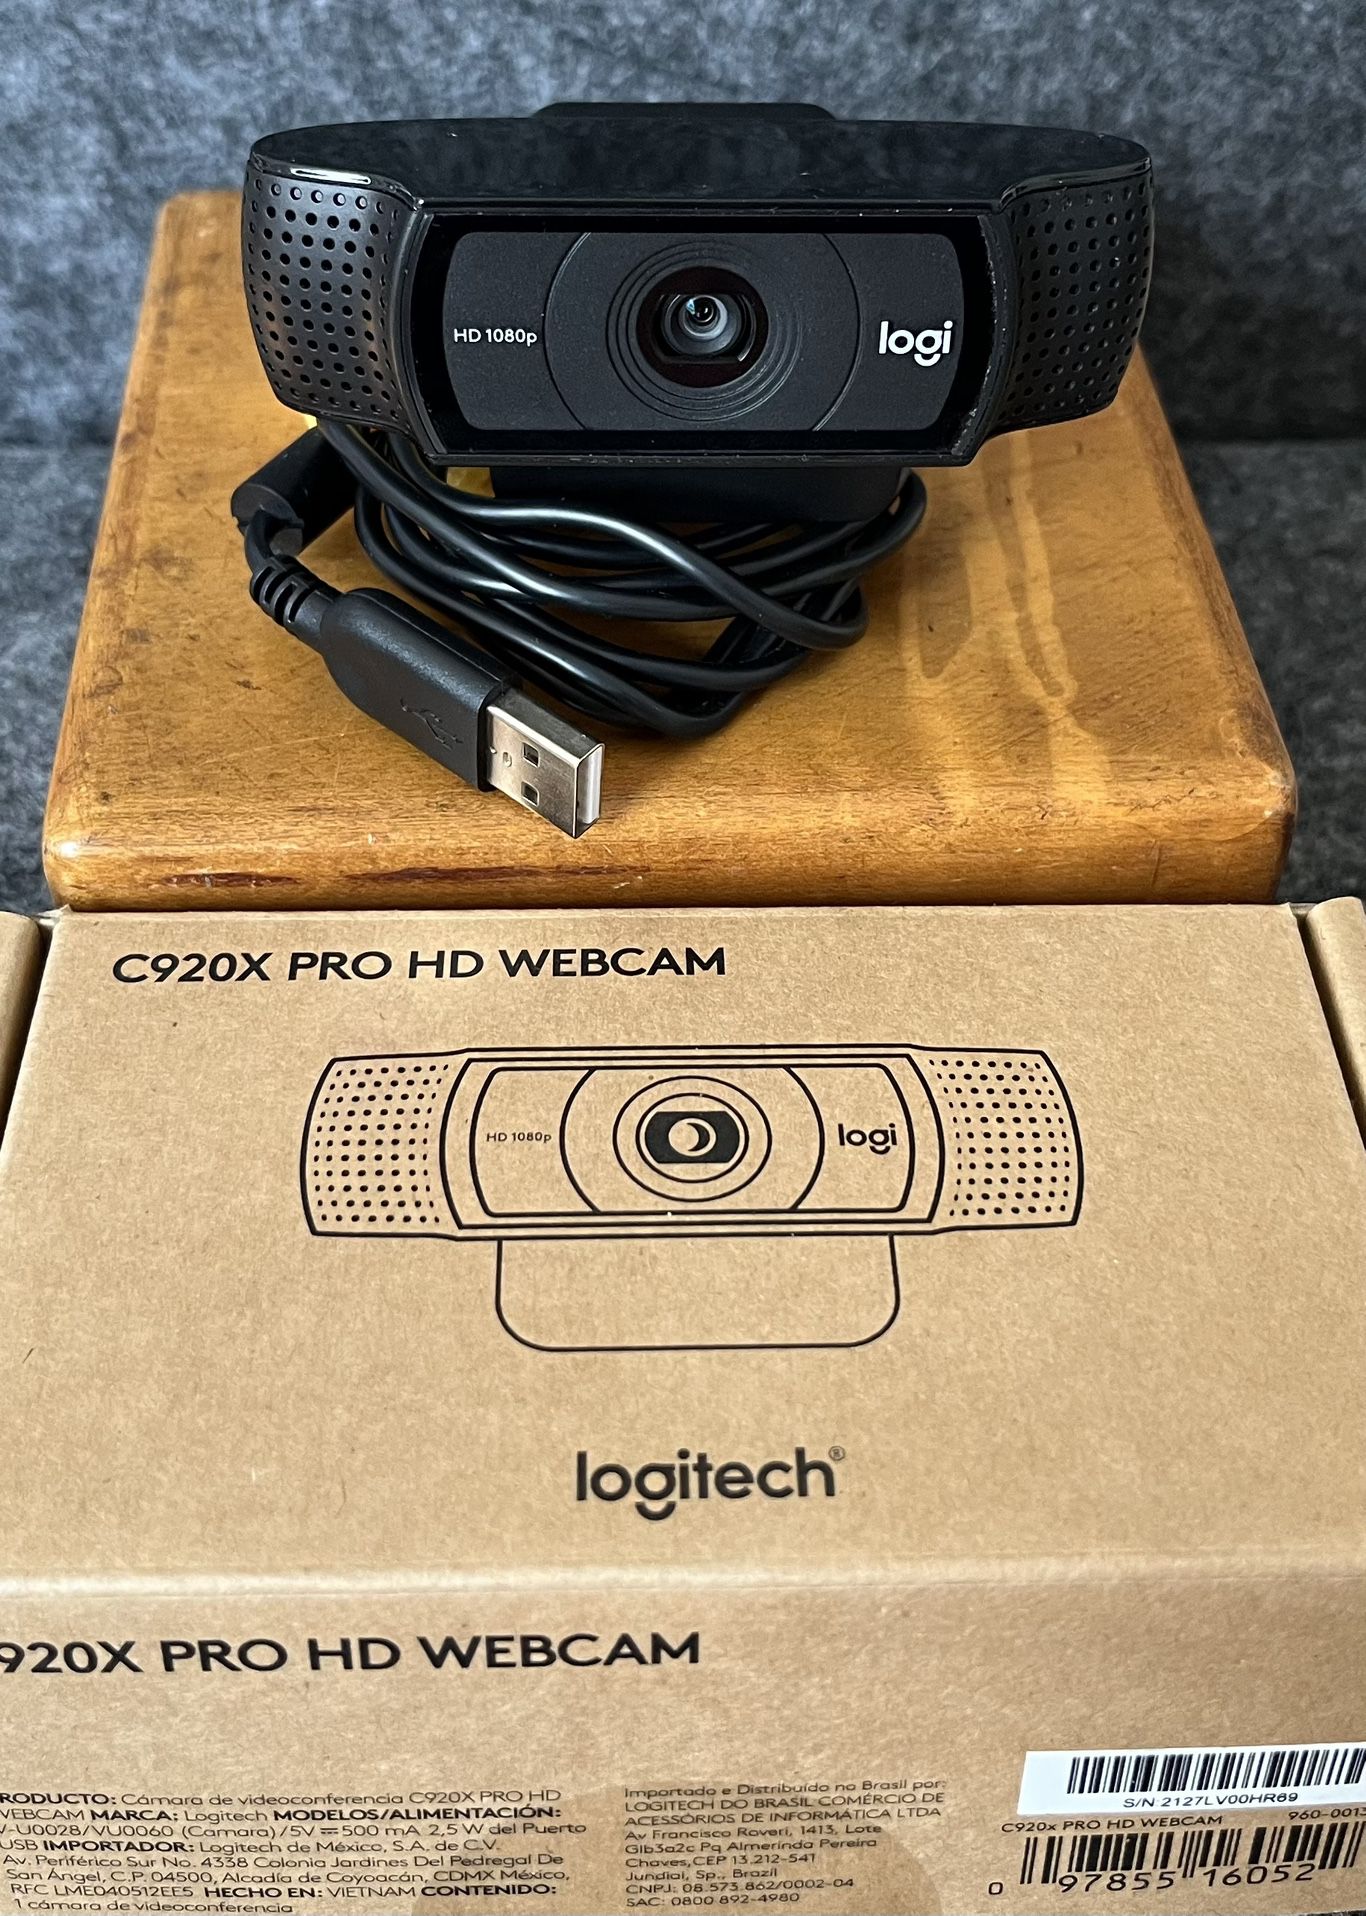 Logitech Logi C920 V-U0060 1080p HD Webcam 